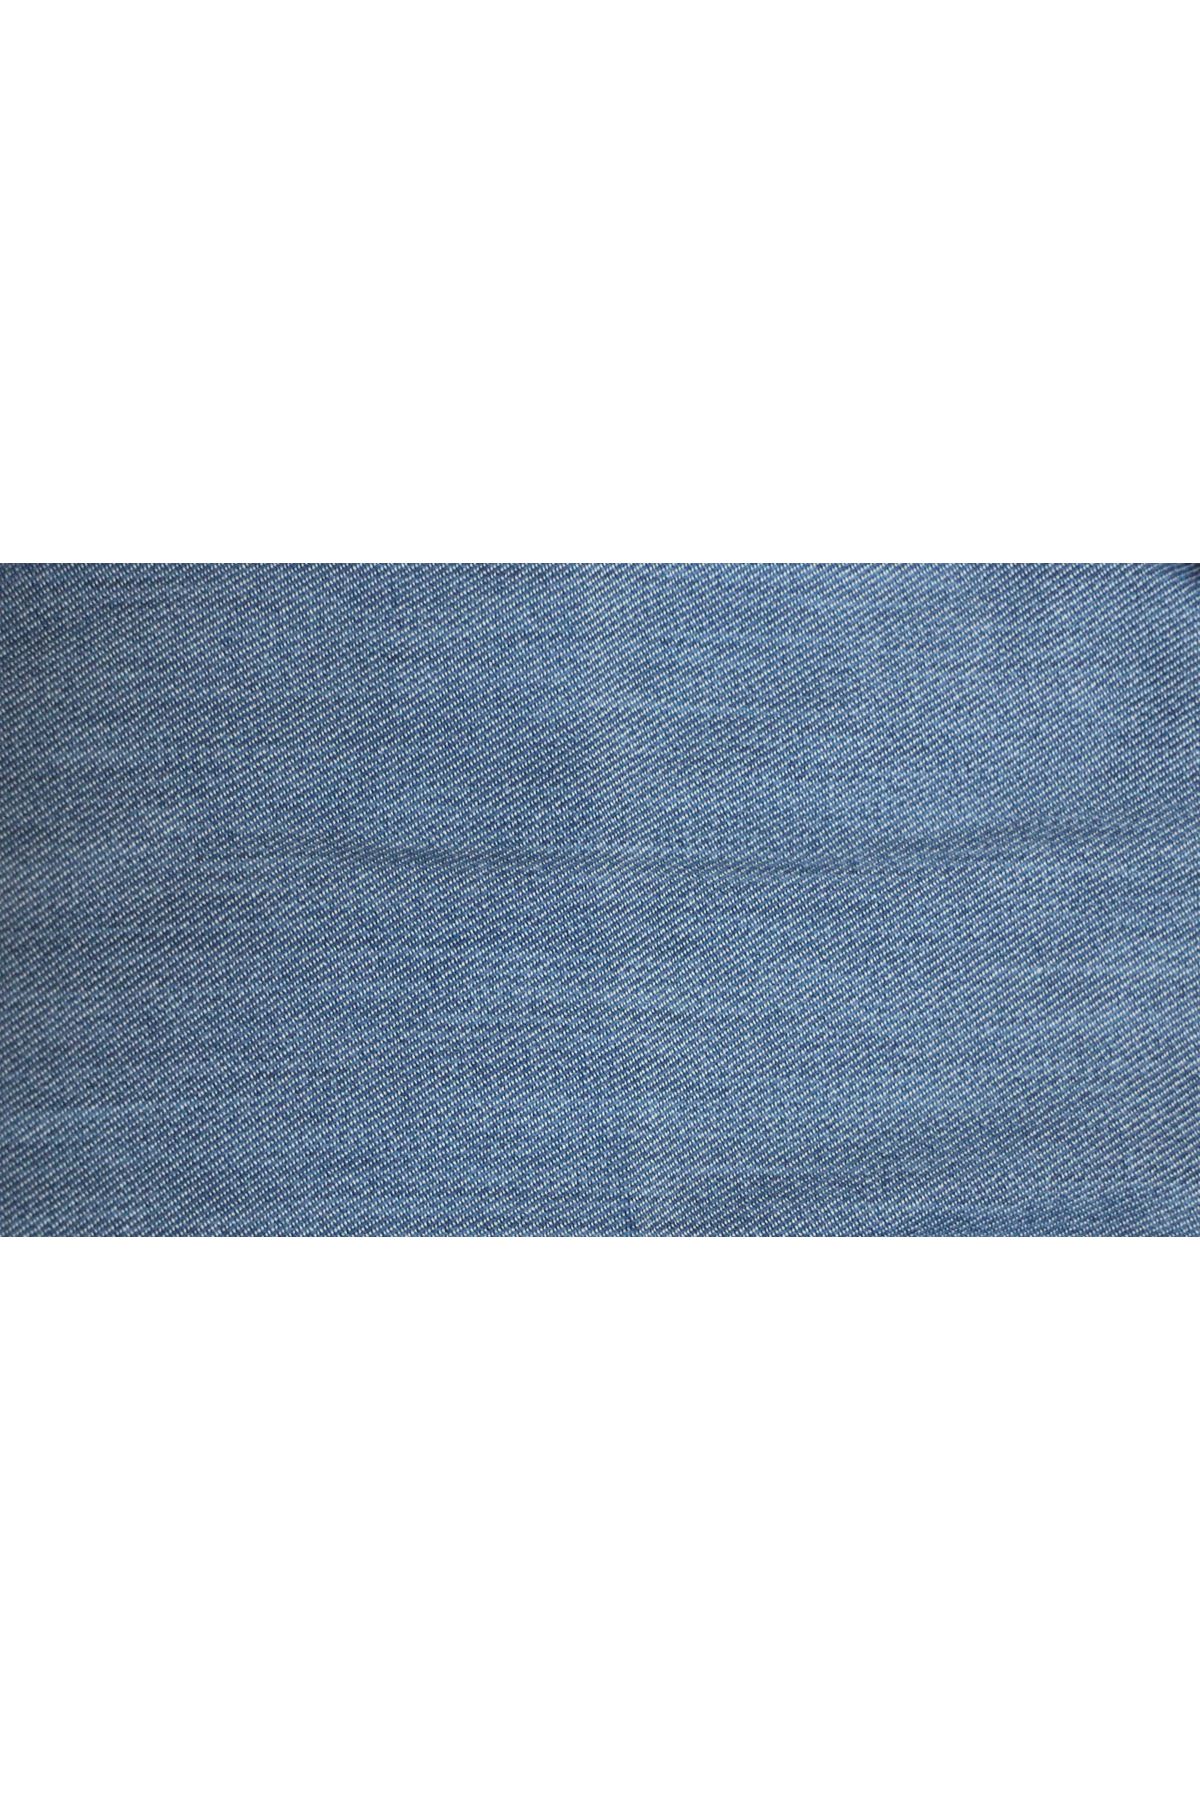 D-9183-7 Büyük Beden Dar Paça Uzun Boy Taşlı Tırnaklı Defolu Kot Pantolon - Soğuk Mavi 